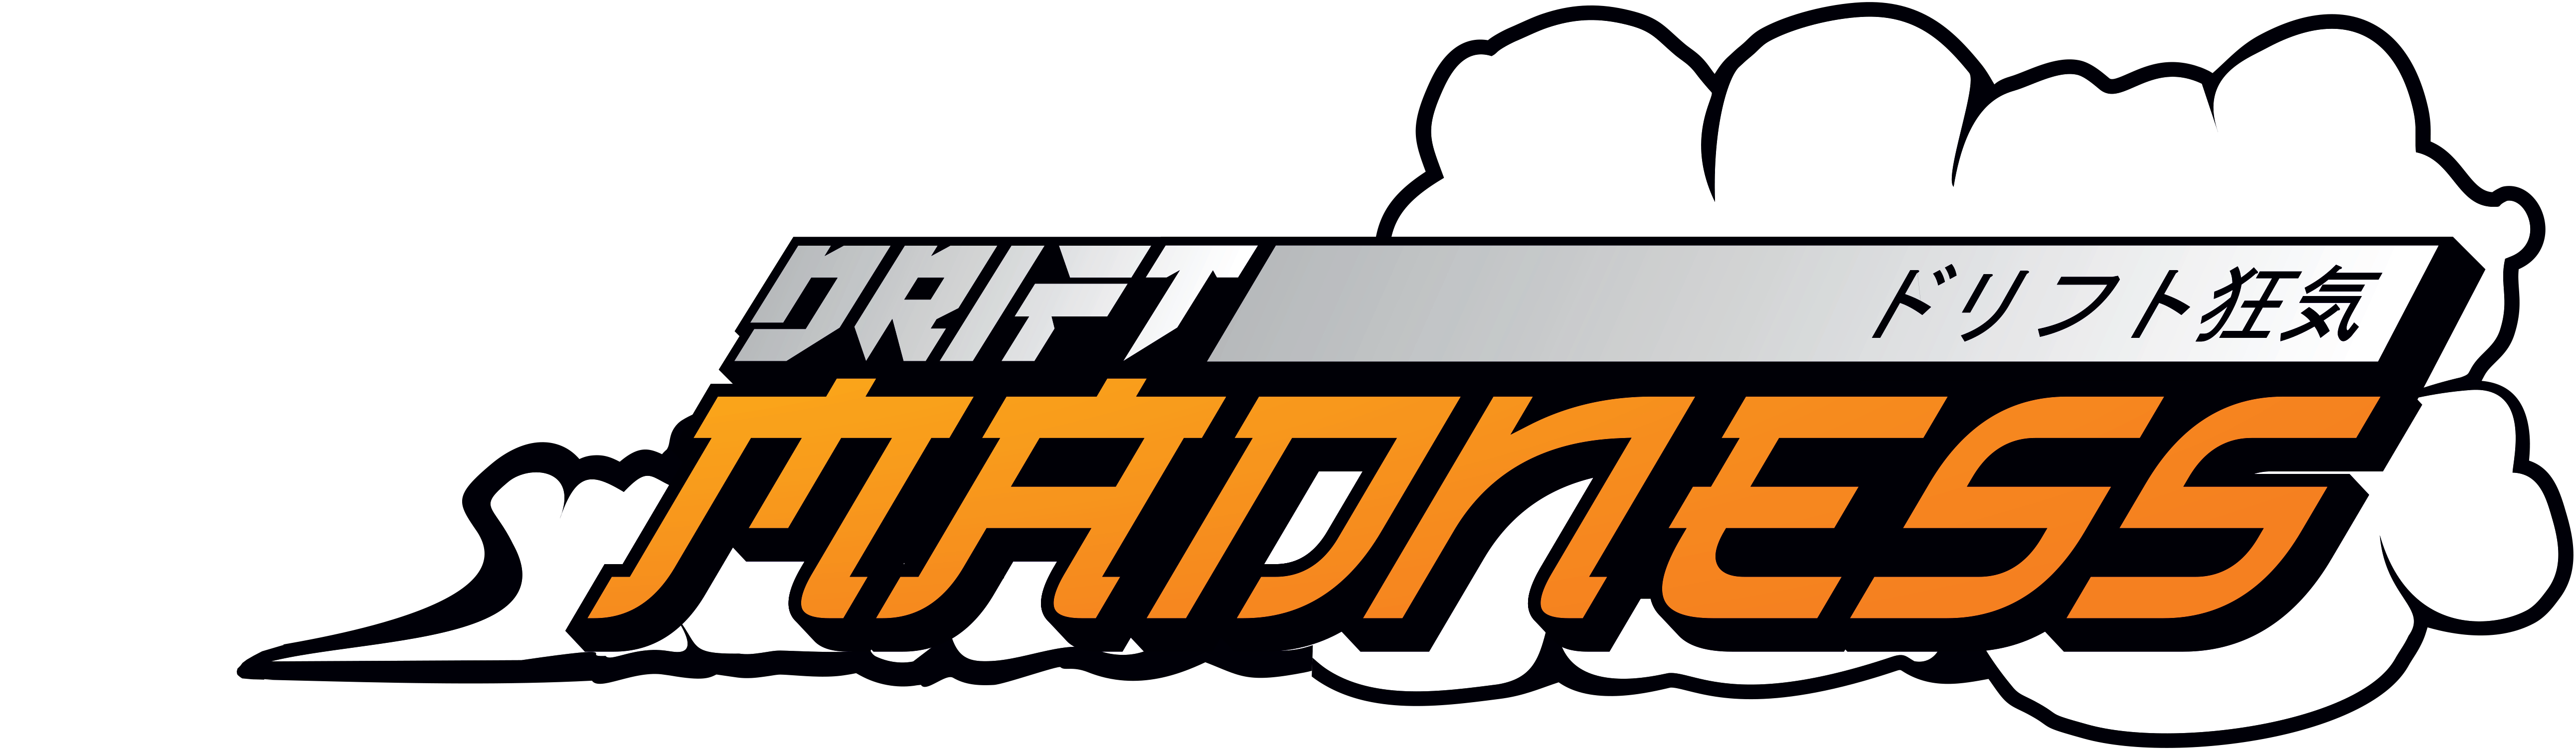 Drift Madness Logo 2